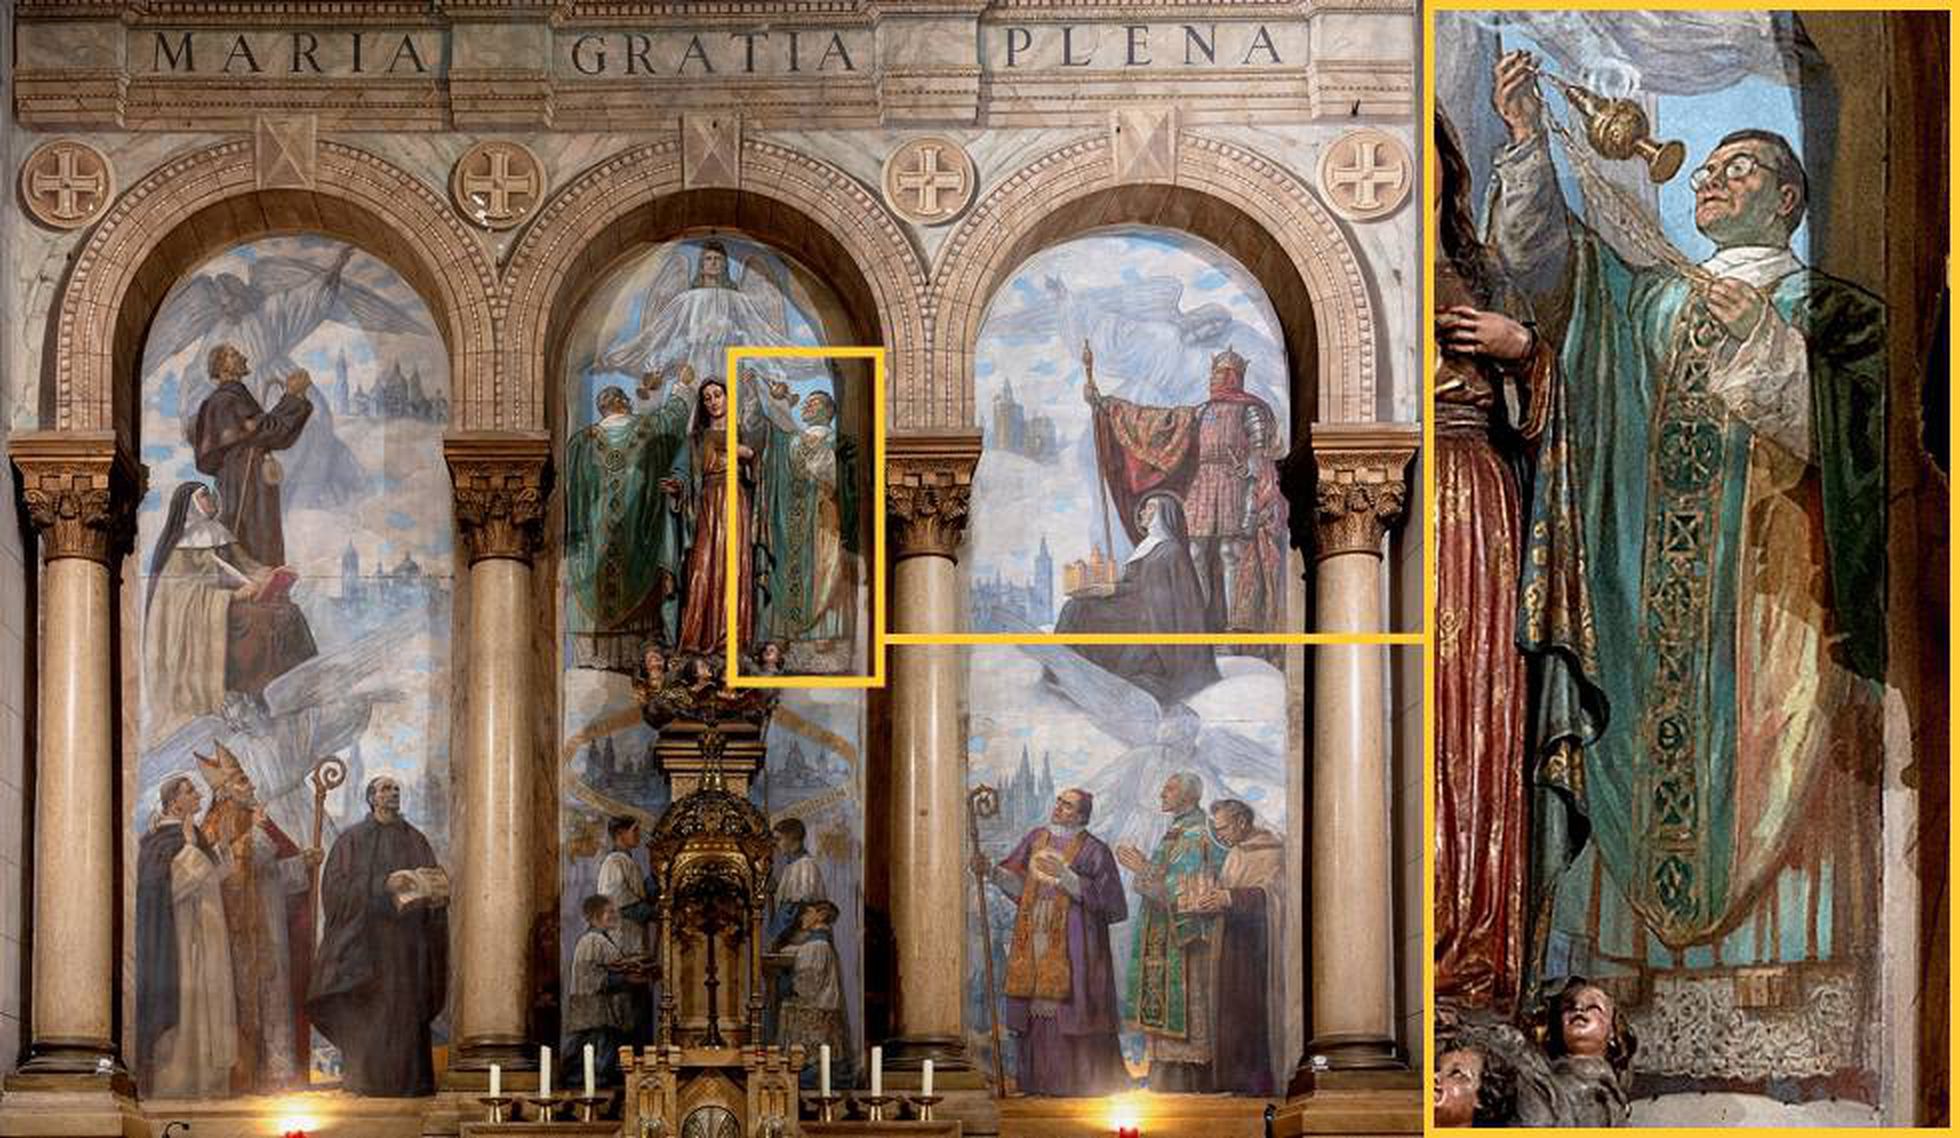 El retablo mayor de la iglesia de la misiónbclaretiana, donde se cree que aparece, en el centro a la derecha de la Virgen, retratado el padre Joaquín Aller, uno de los falsificadores de Dios.